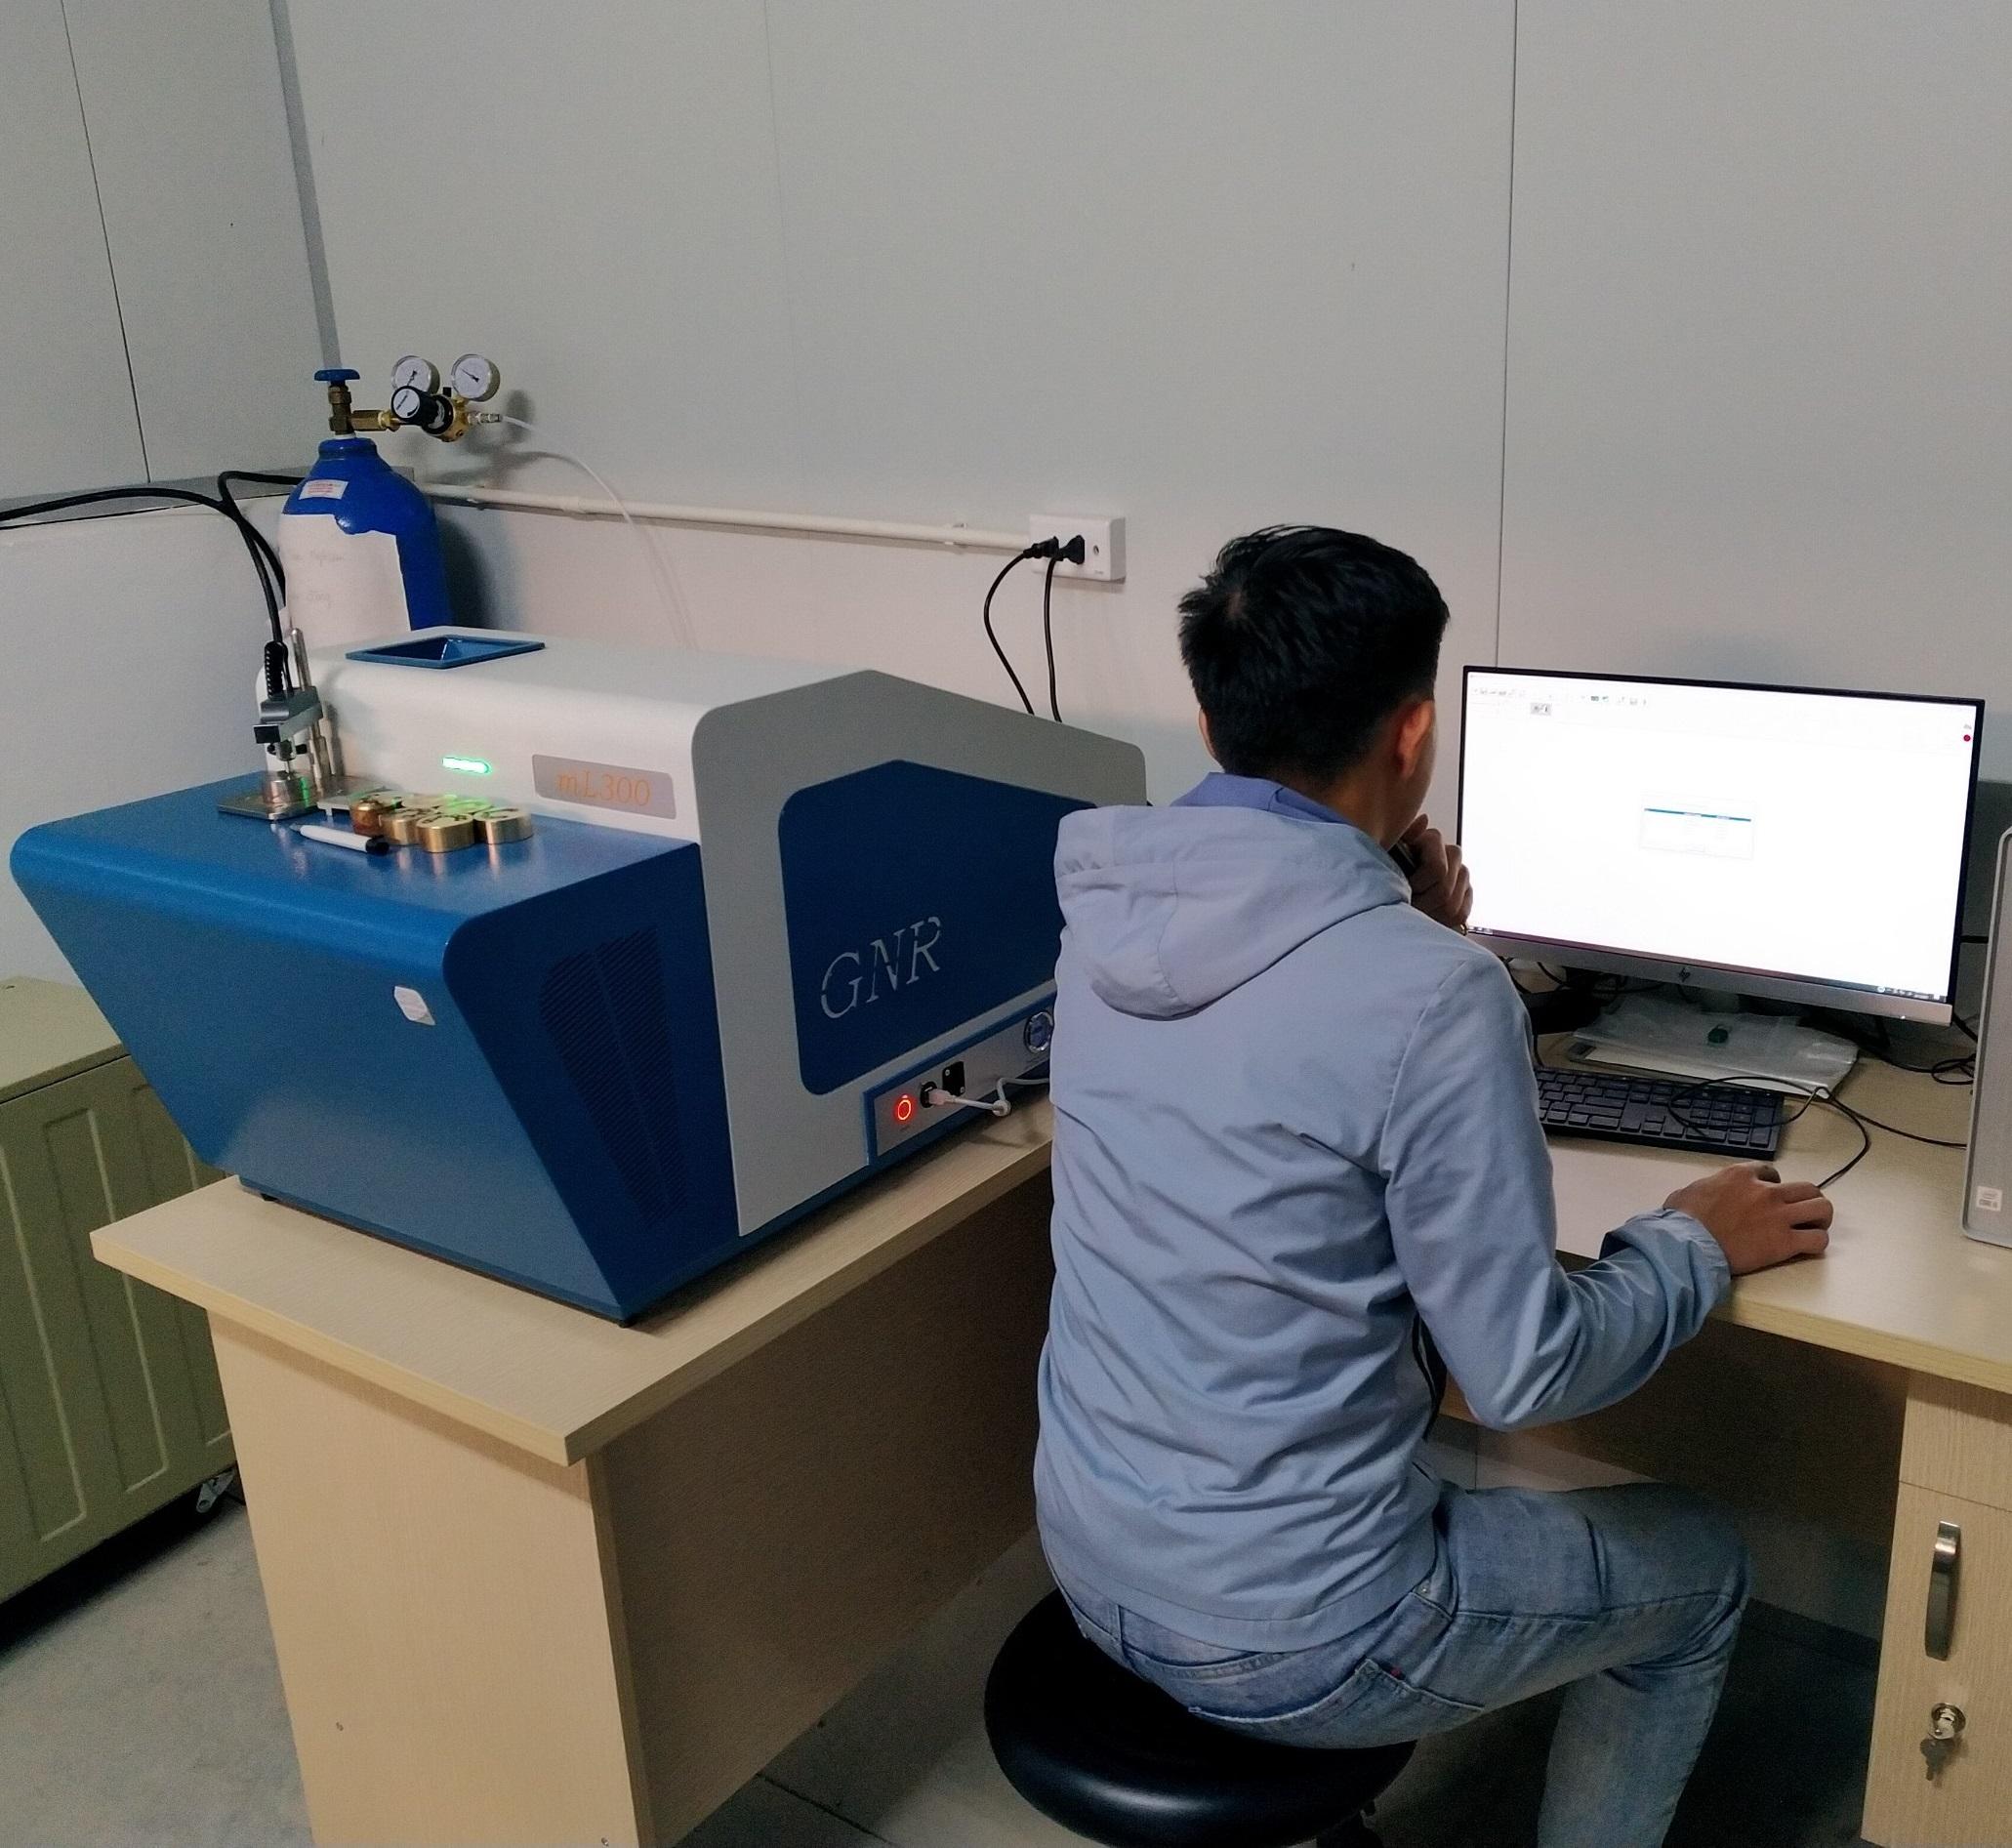 Installation, handover of spectrometer S3 MiniLab 300